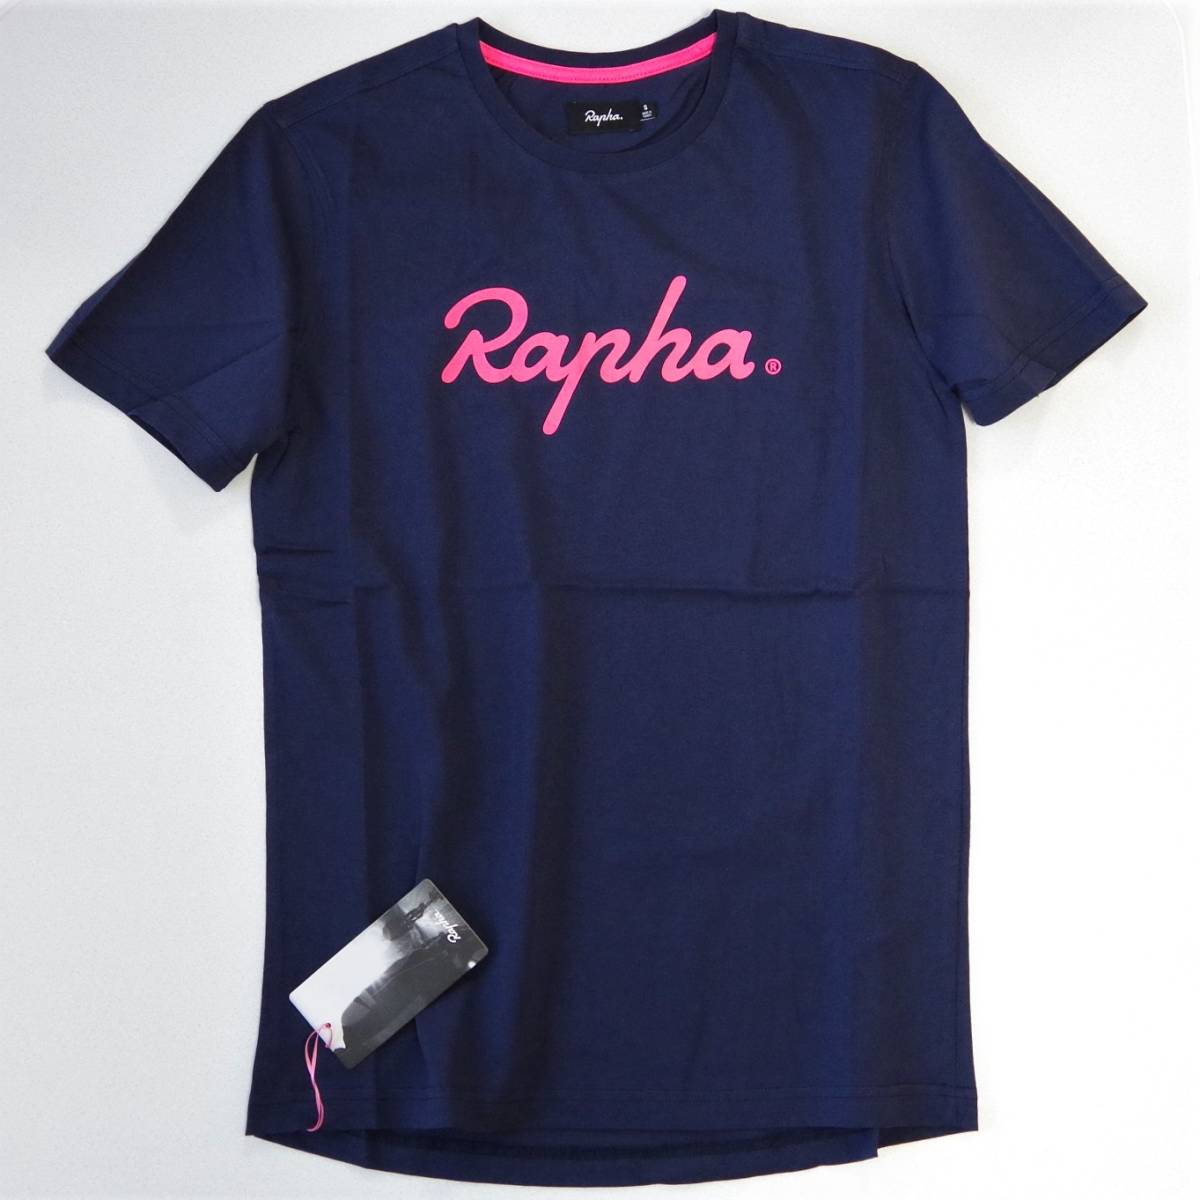 ★新品未使用! 送料込!★Rapha Logo T-Shirt ネイビー/ピンク系 XSサイズ ラファ ロゴ Tシャツ 半袖 コットン100％ 自転車 サイクリングの画像1